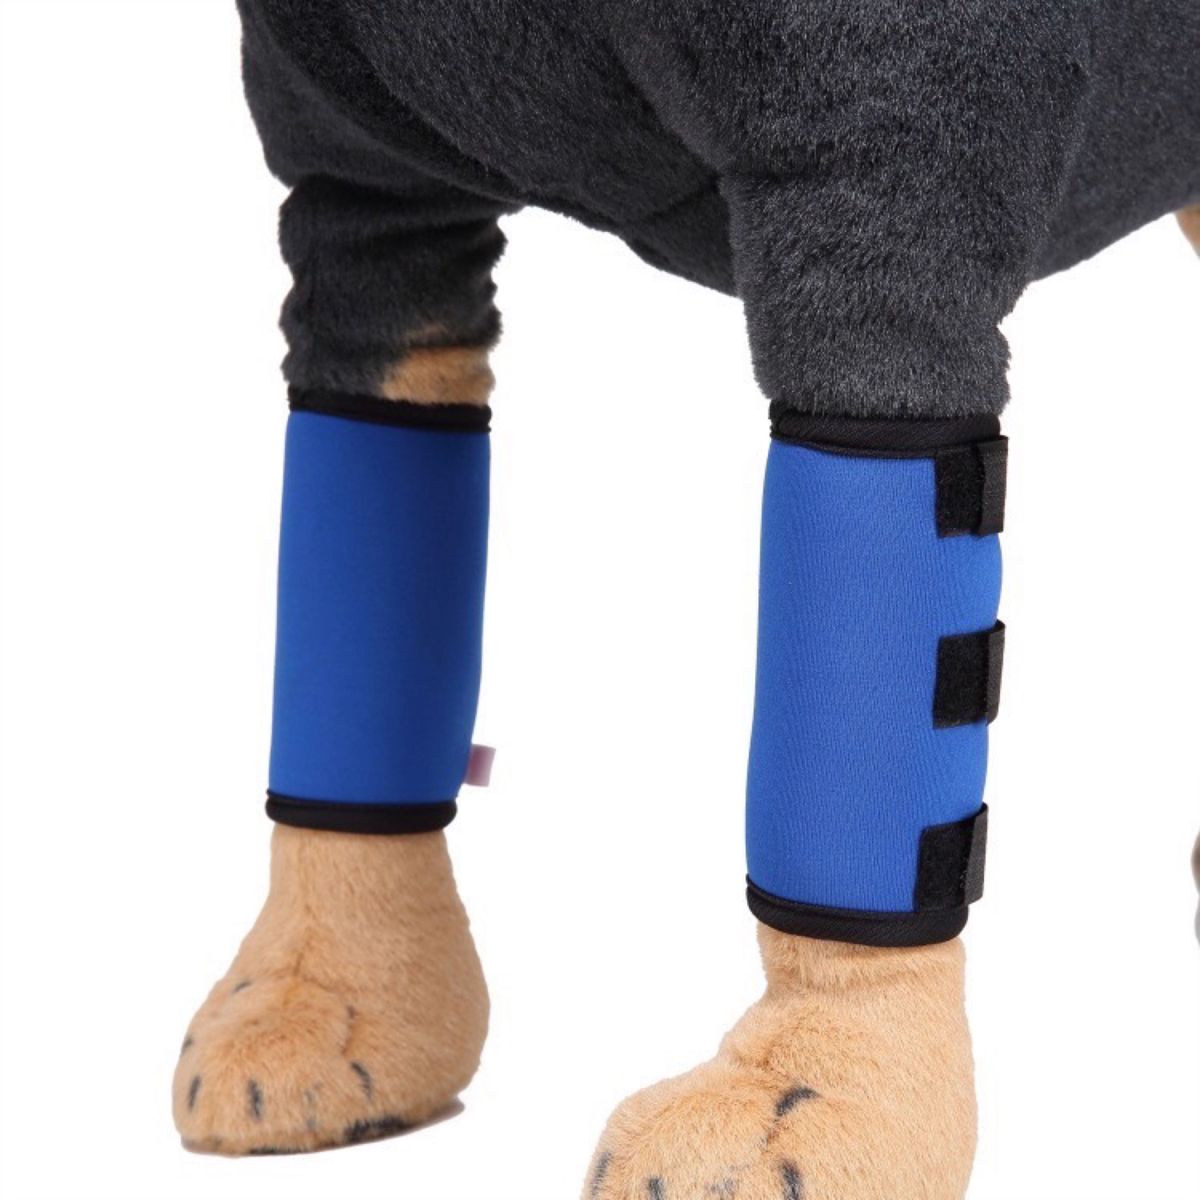  ①犬用膝サポーター ブルー Lサイズ ※2枚1組 関節痛 傷口カバー 犬の脚パッド ペット用保護具